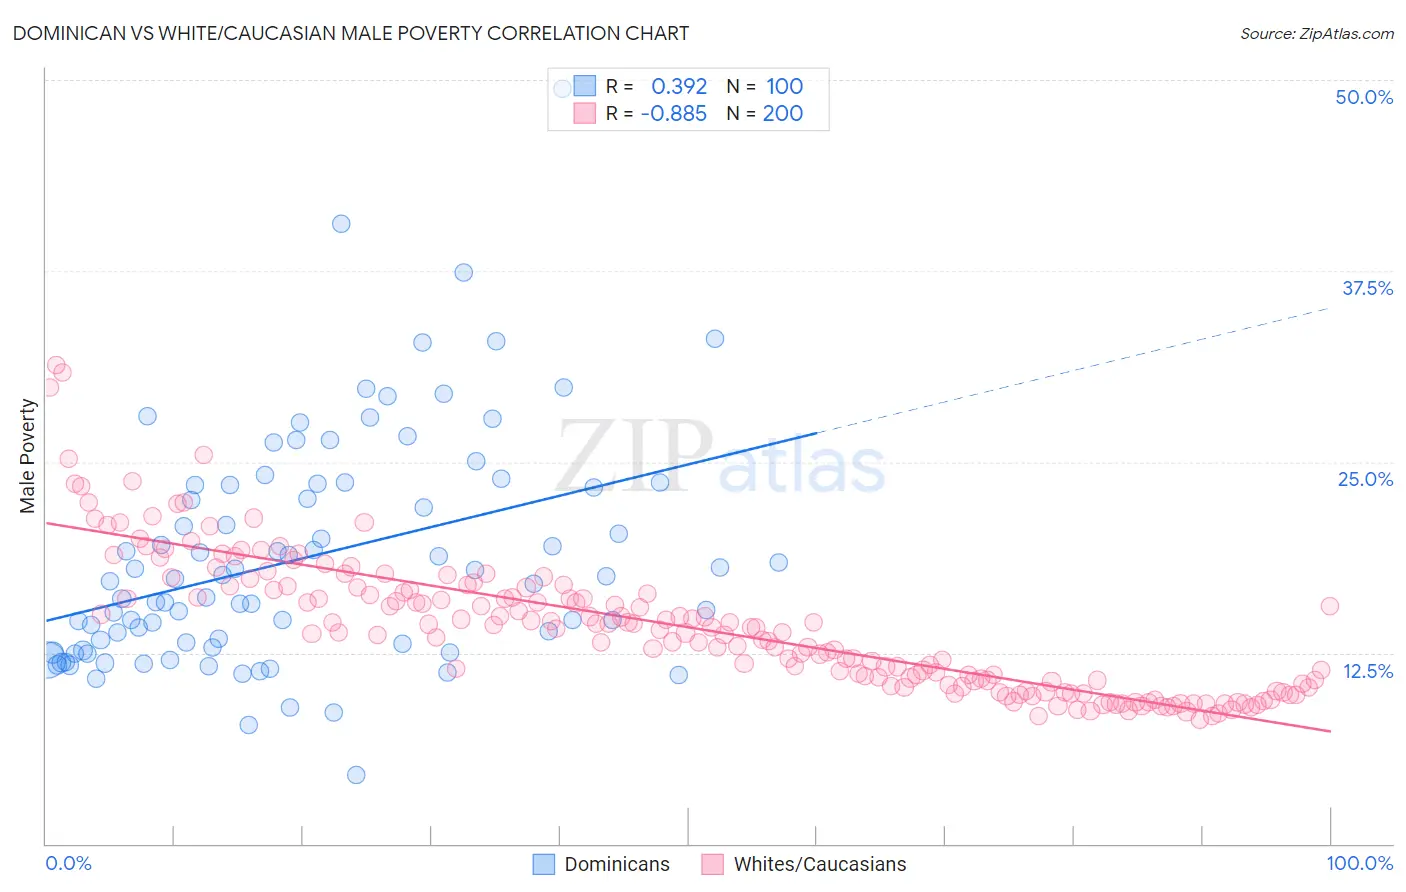 Dominican vs White/Caucasian Male Poverty